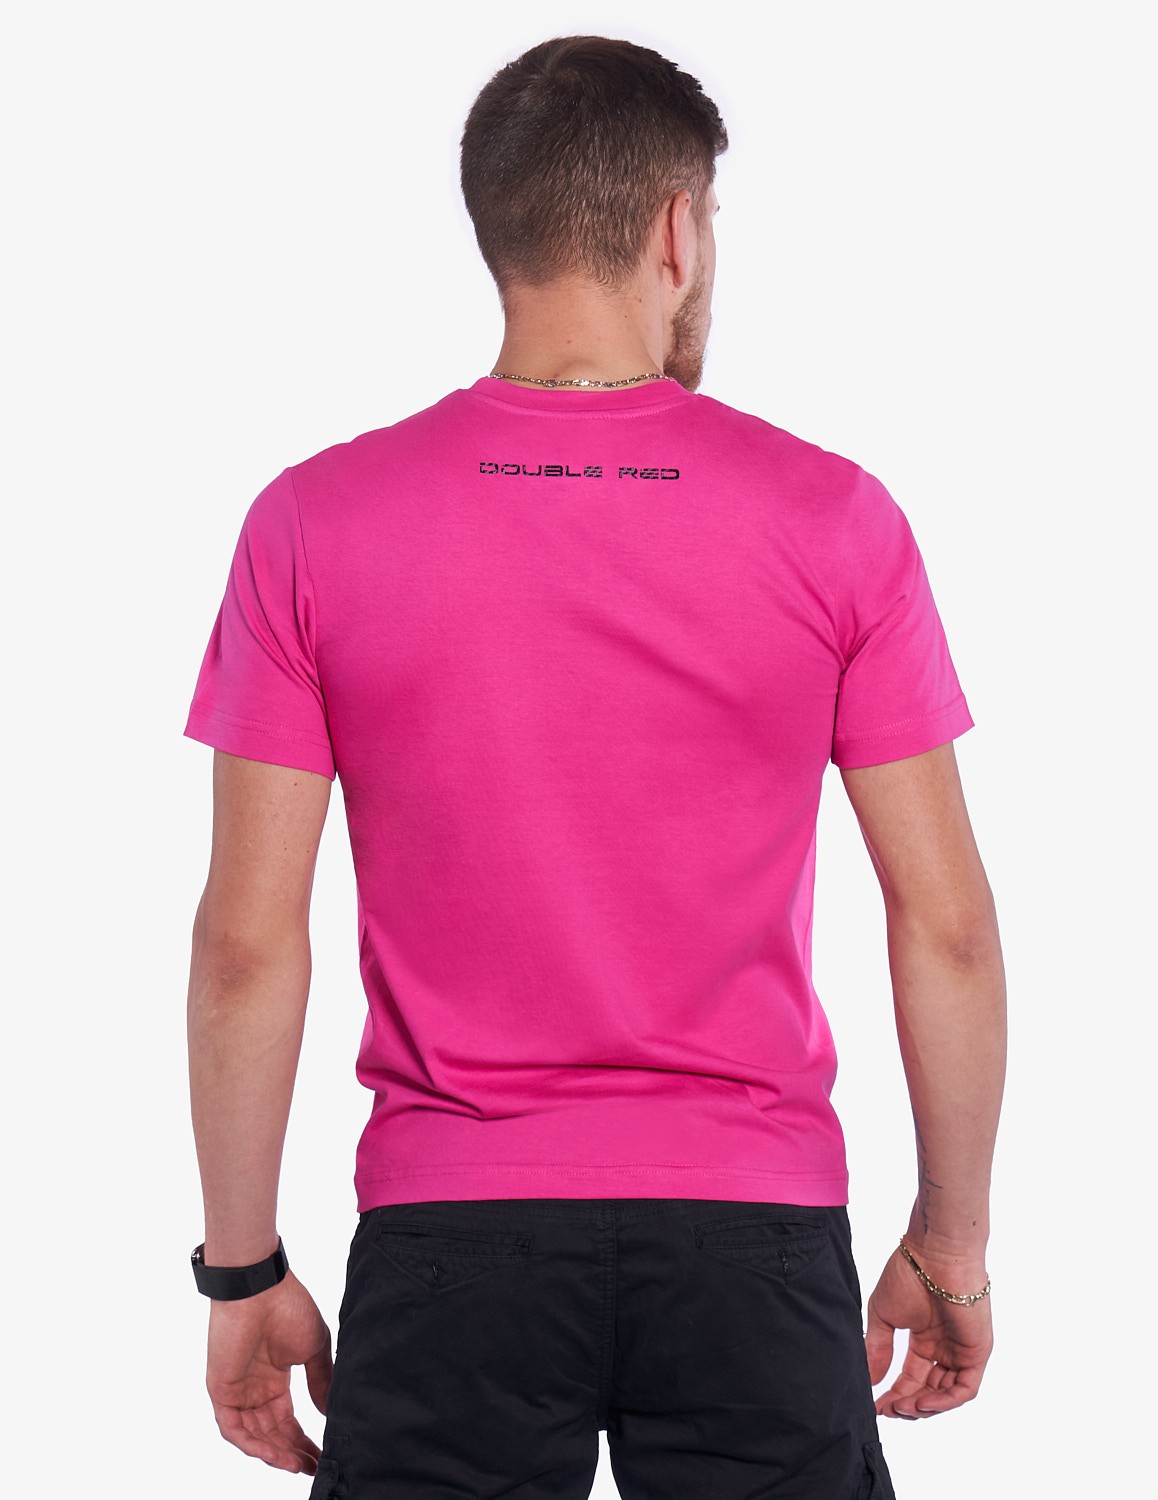 CARBONARO T-shirt Pink